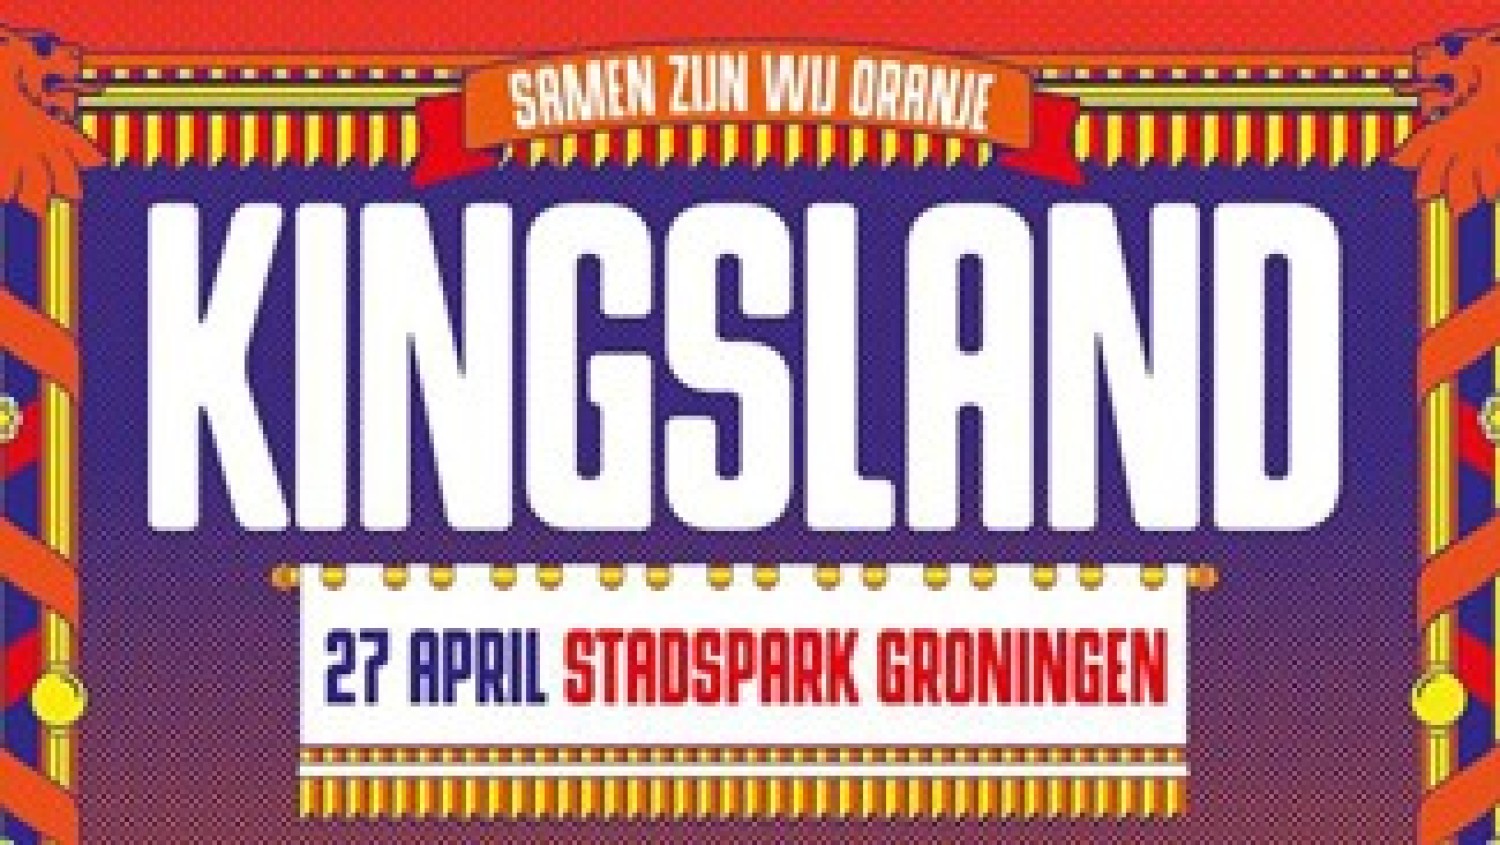 Party report: Kingsland Festival Groningen, Groningen (27-04-2019)